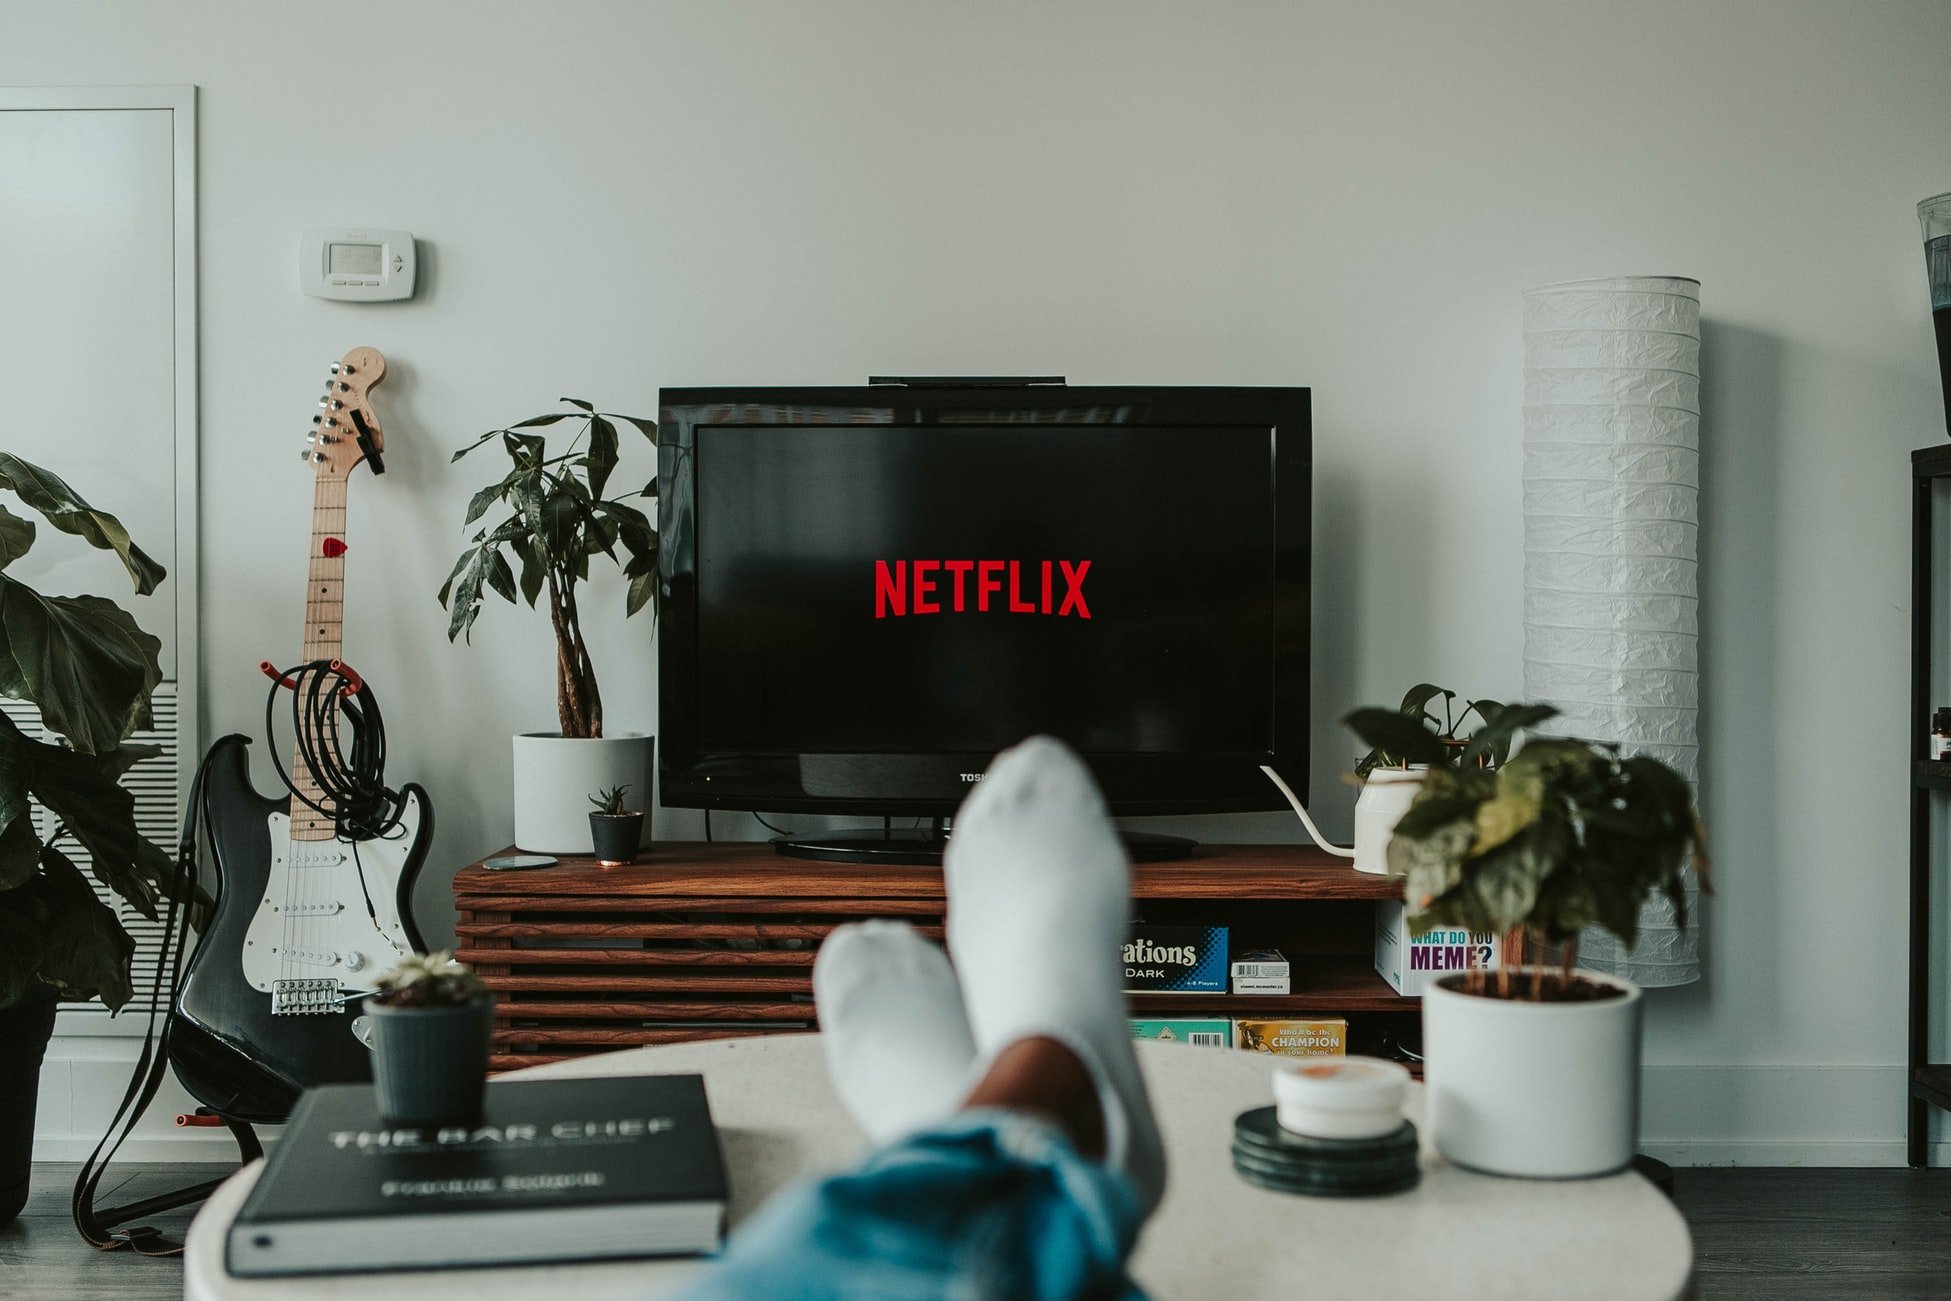 Netflix planeja conquistar público que não tem interesse por conteúdo via streaming